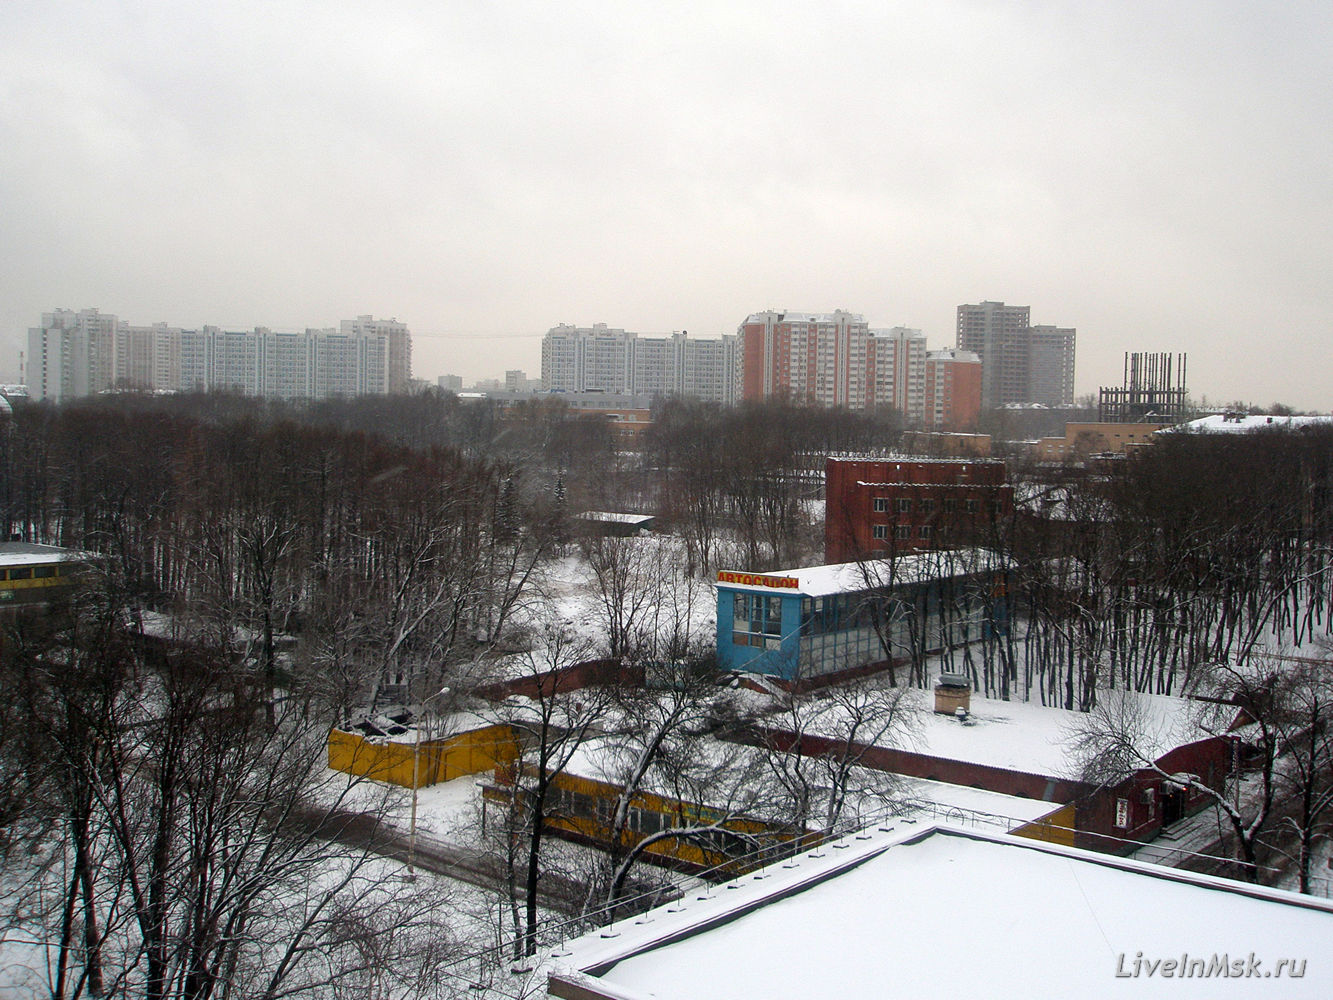 ВДНХ, Вид с крыши павильона Беларусь, фото 2008 года